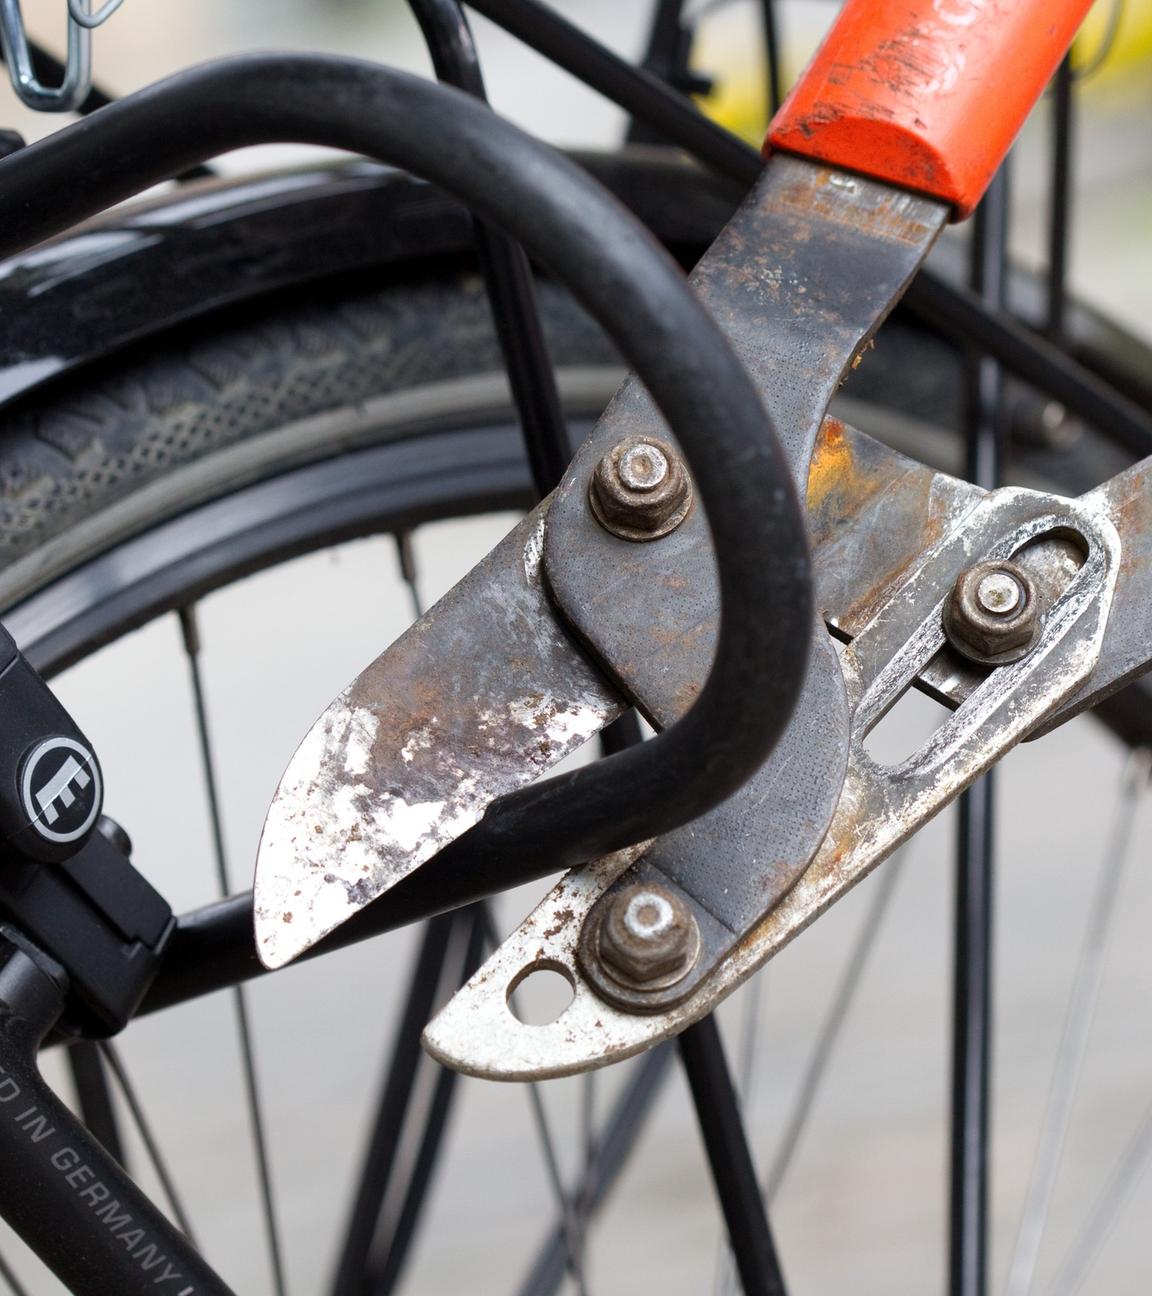 Ein Bolzenschneider wird verwendet, um ein Fahrradschloss aufzubrechen.